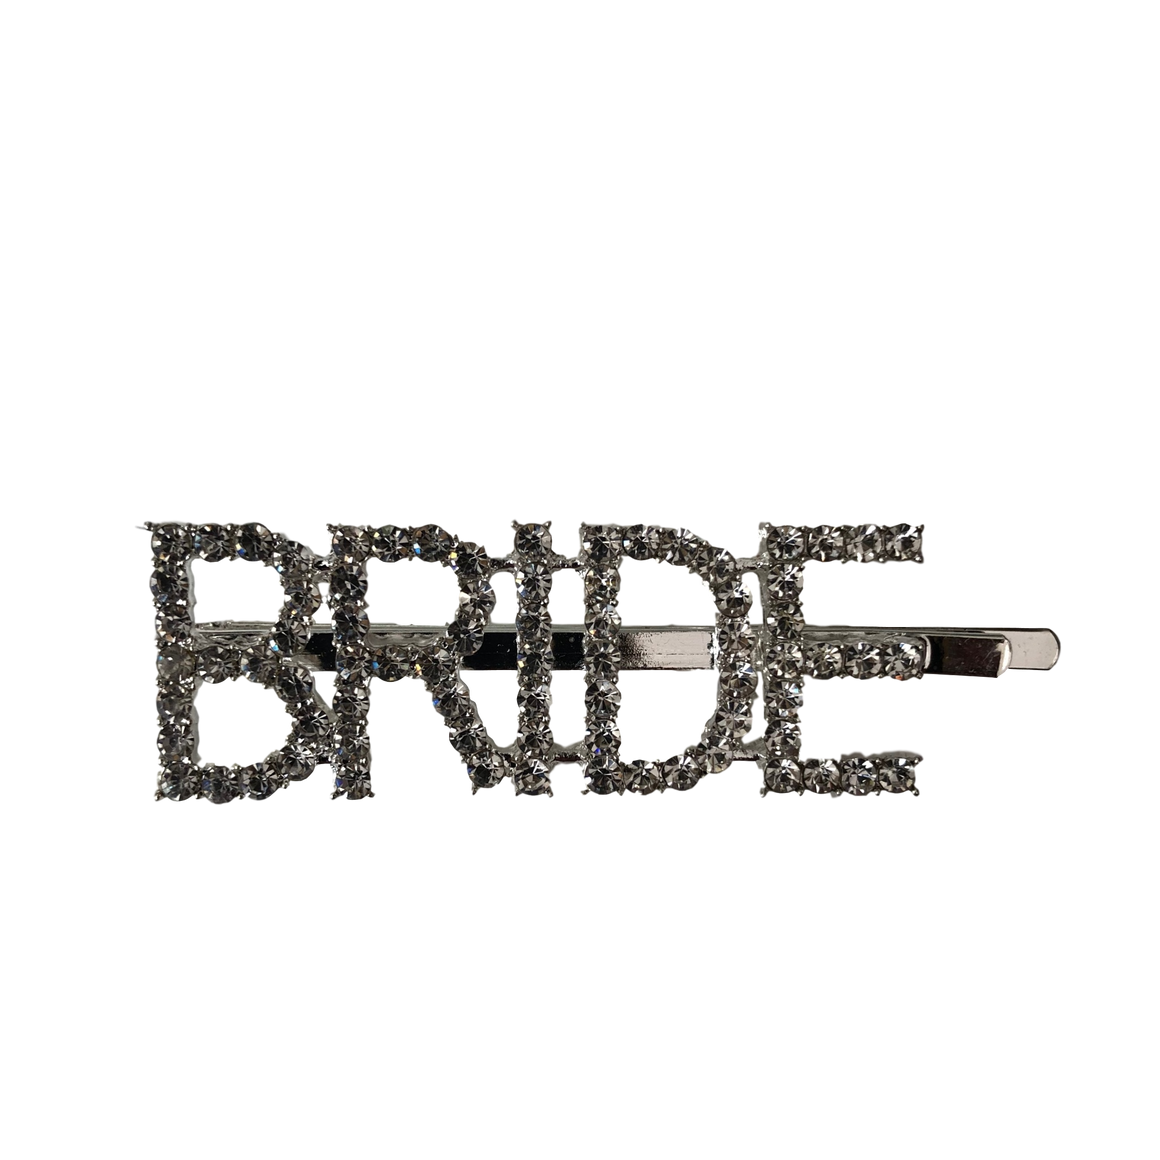 BRIDE and TEAM BRIDE barrette